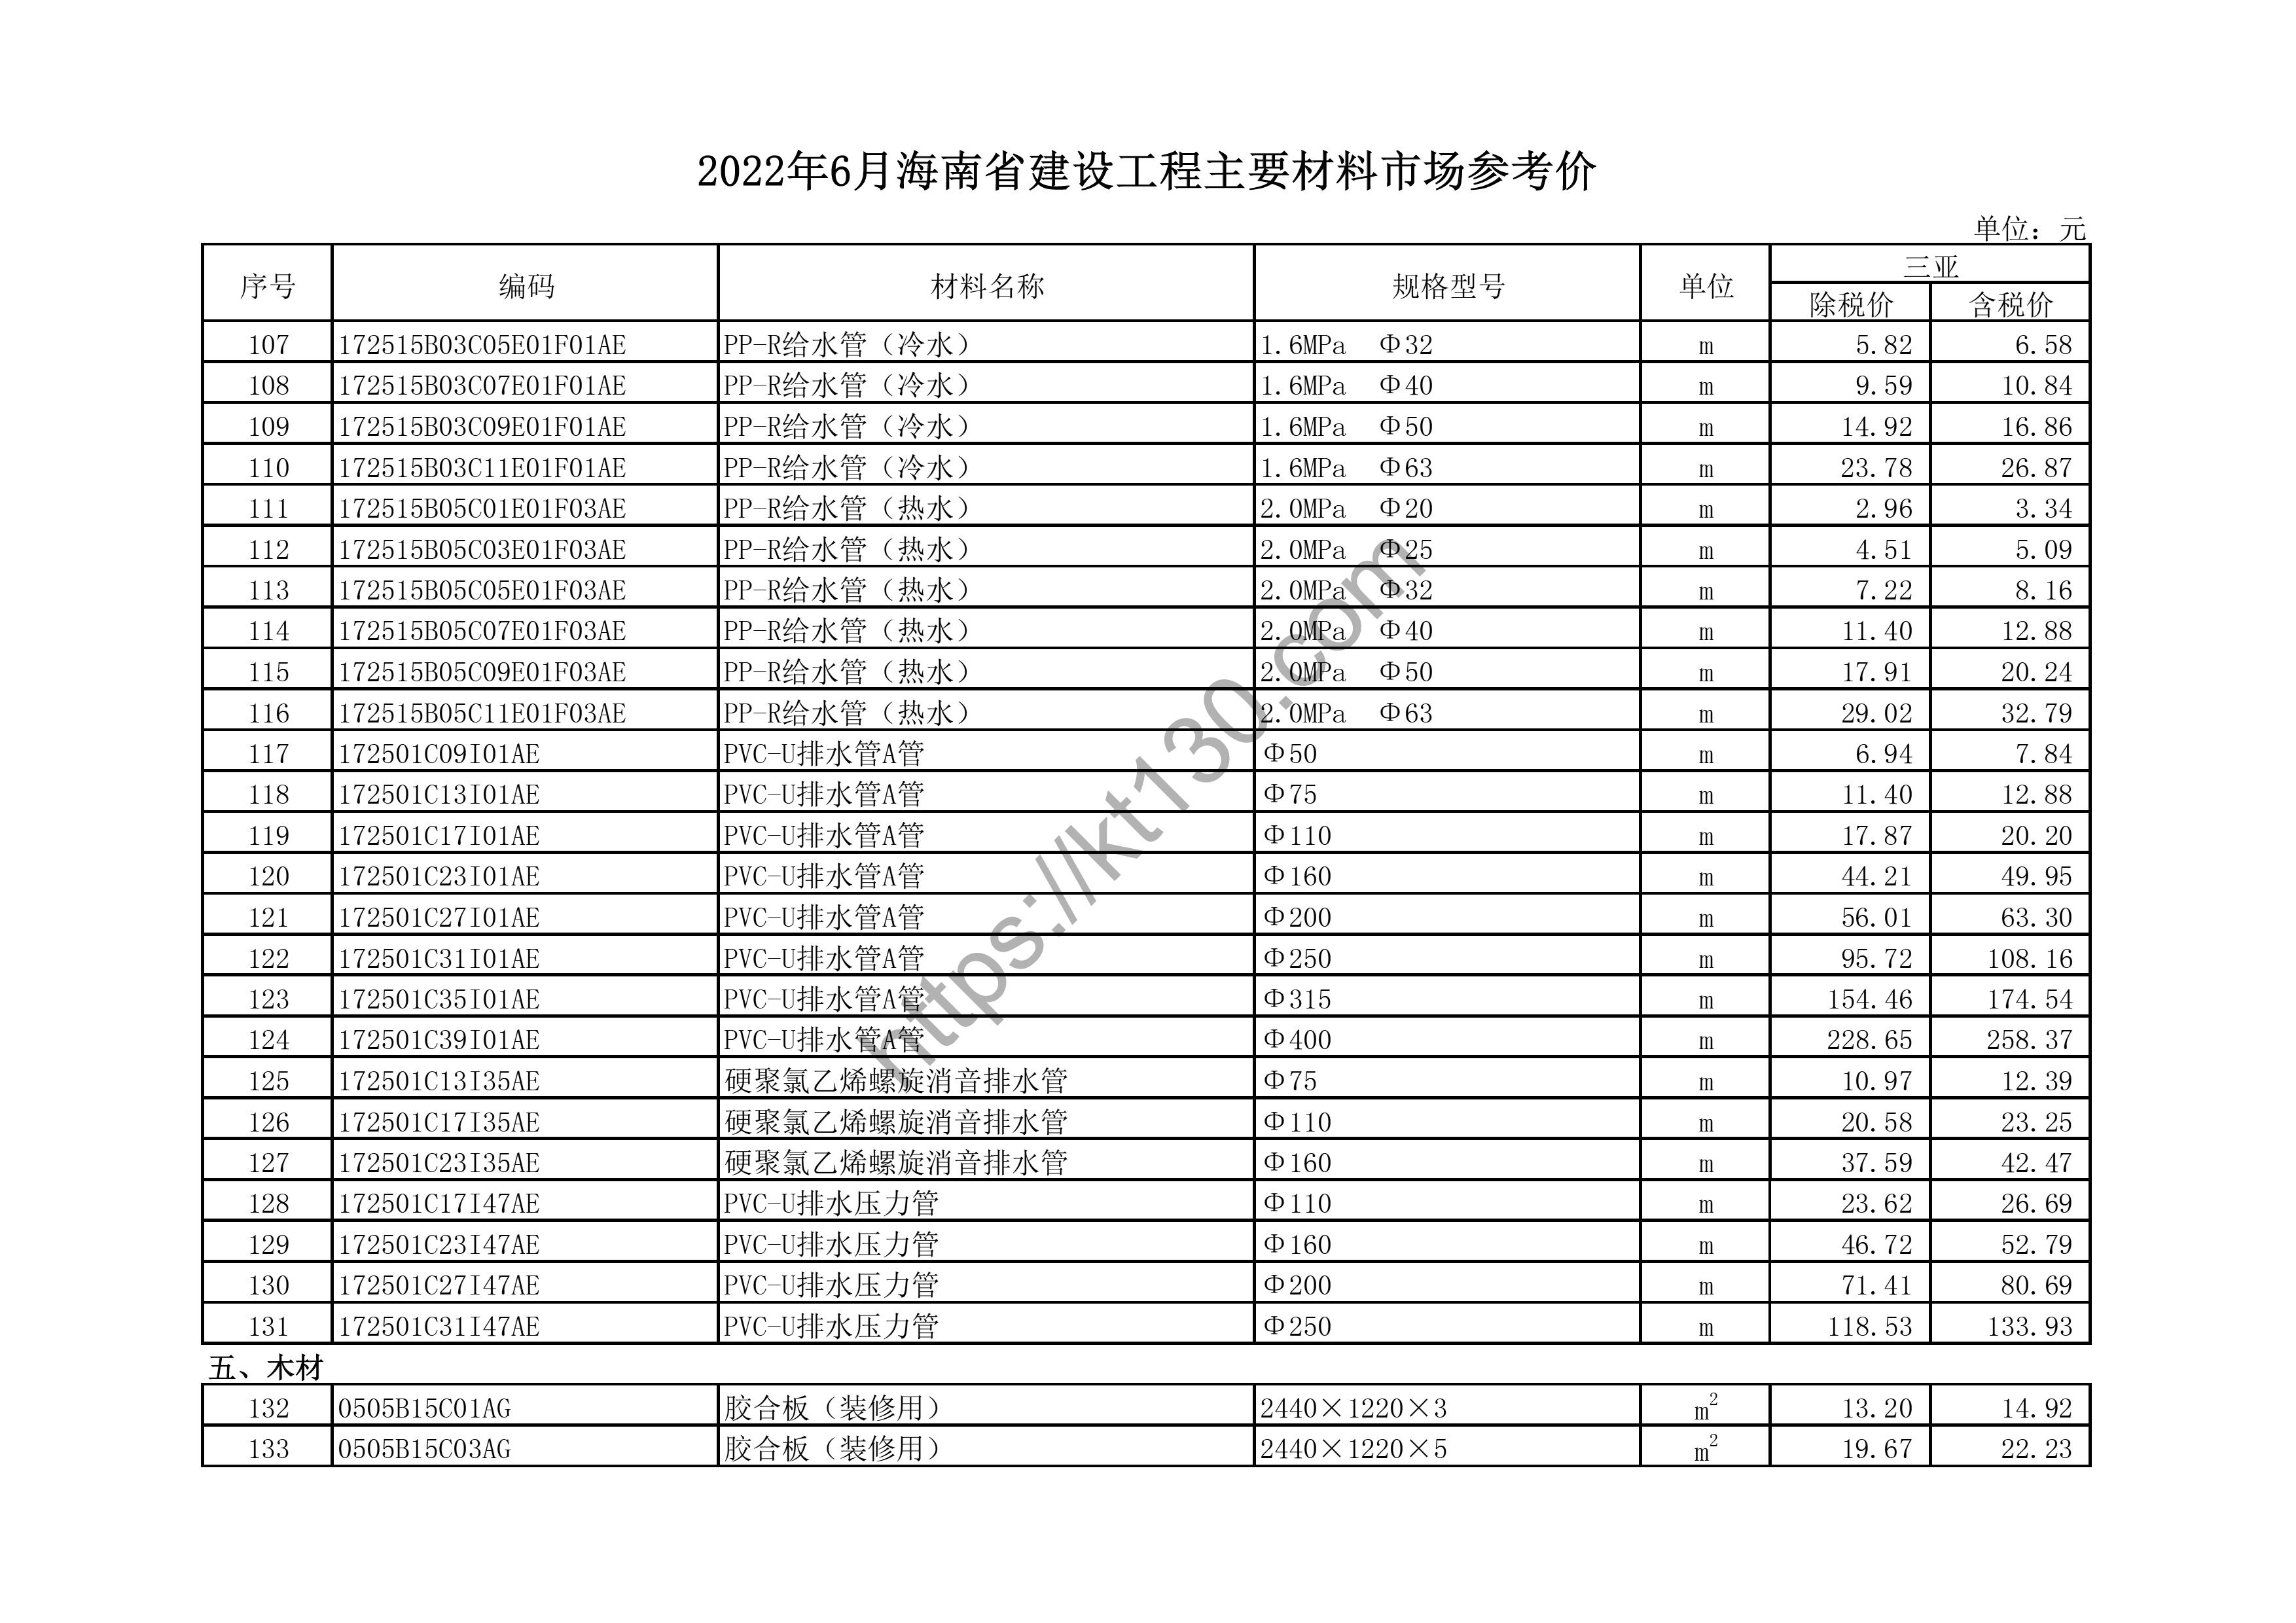 海南省2022年6月建筑材料价_排水管_44441